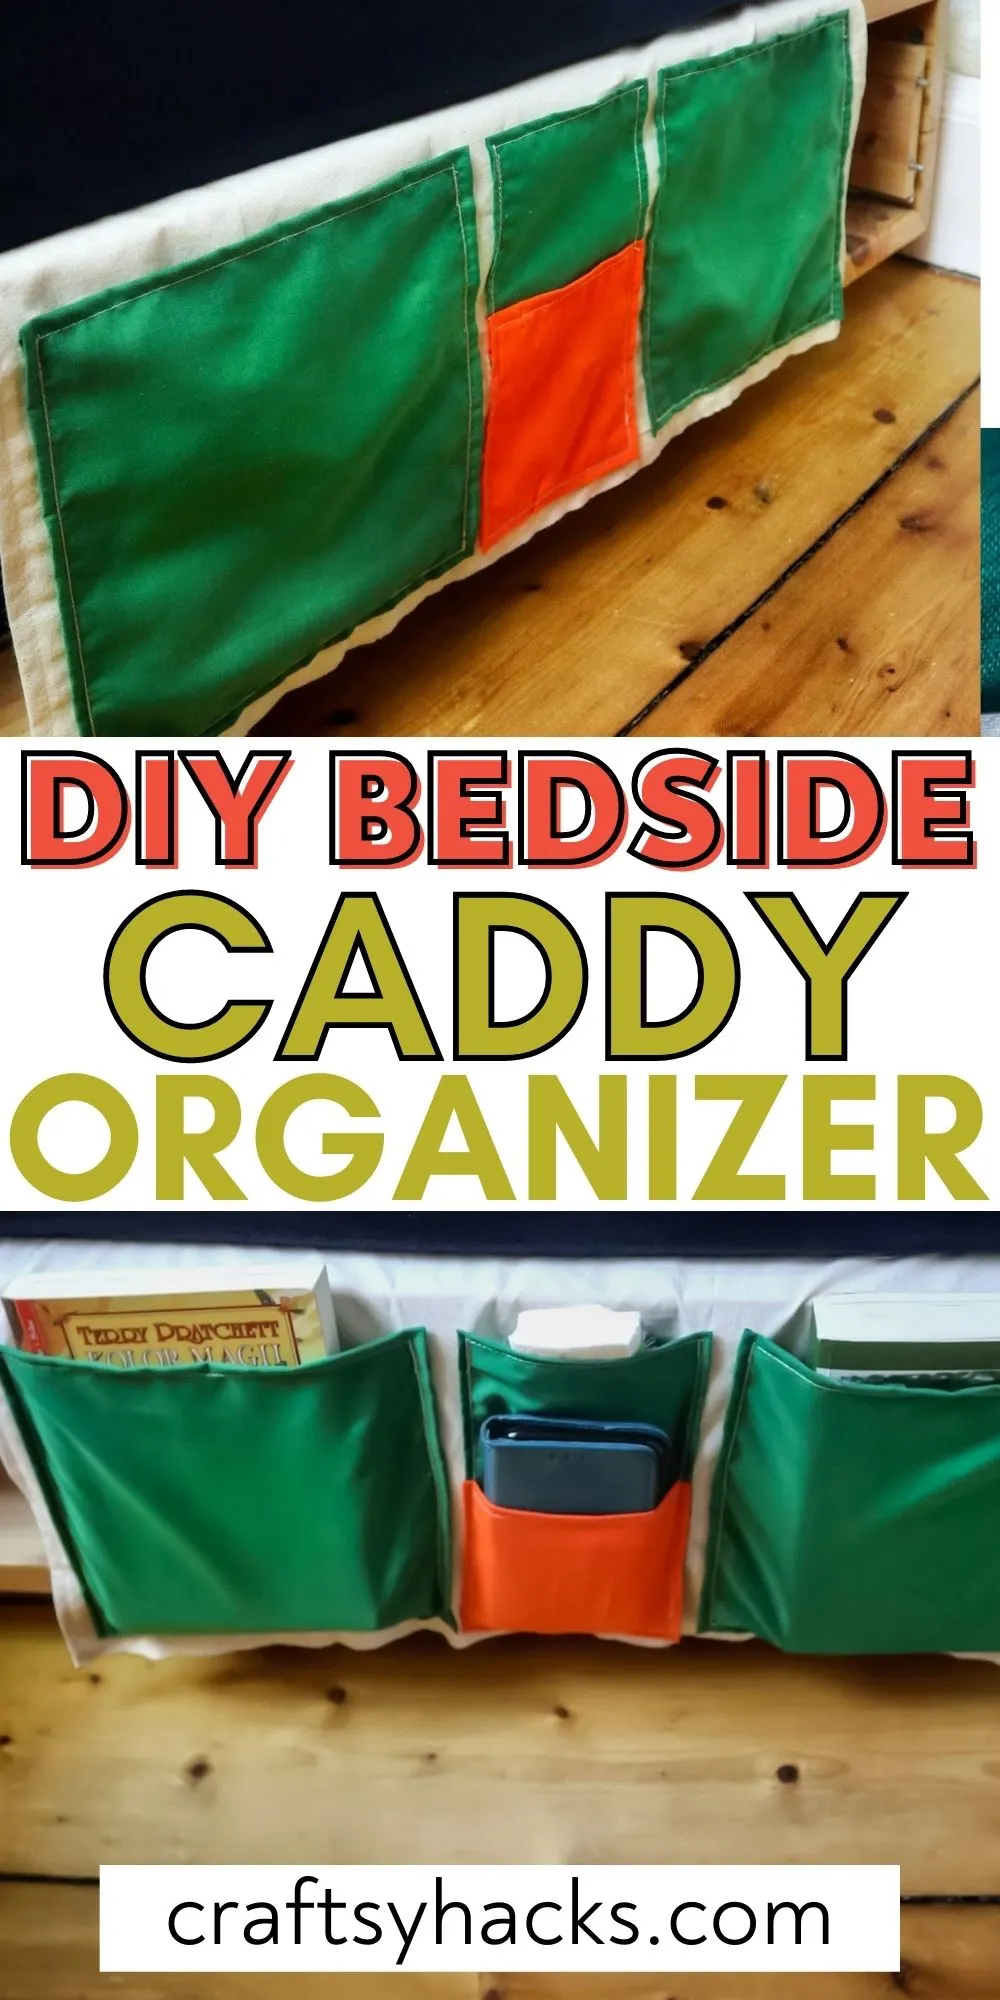 diy bedside caddy organizer